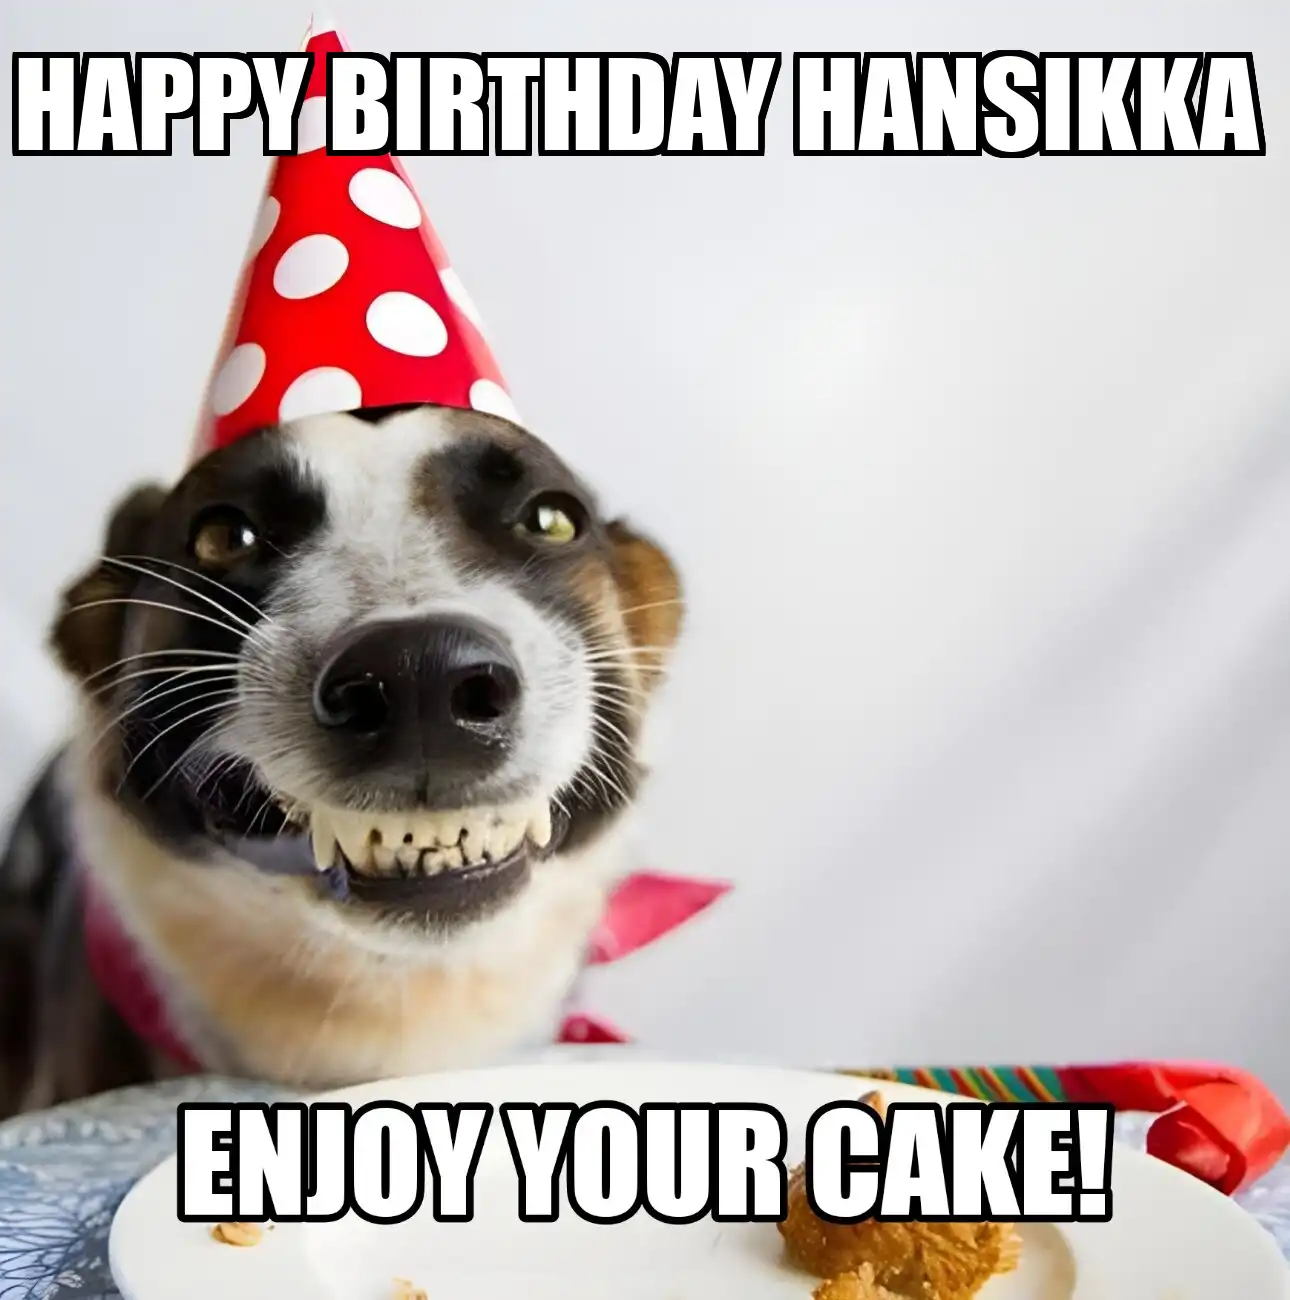 Happy Birthday Hansikka Enjoy Your Cake Dog Meme